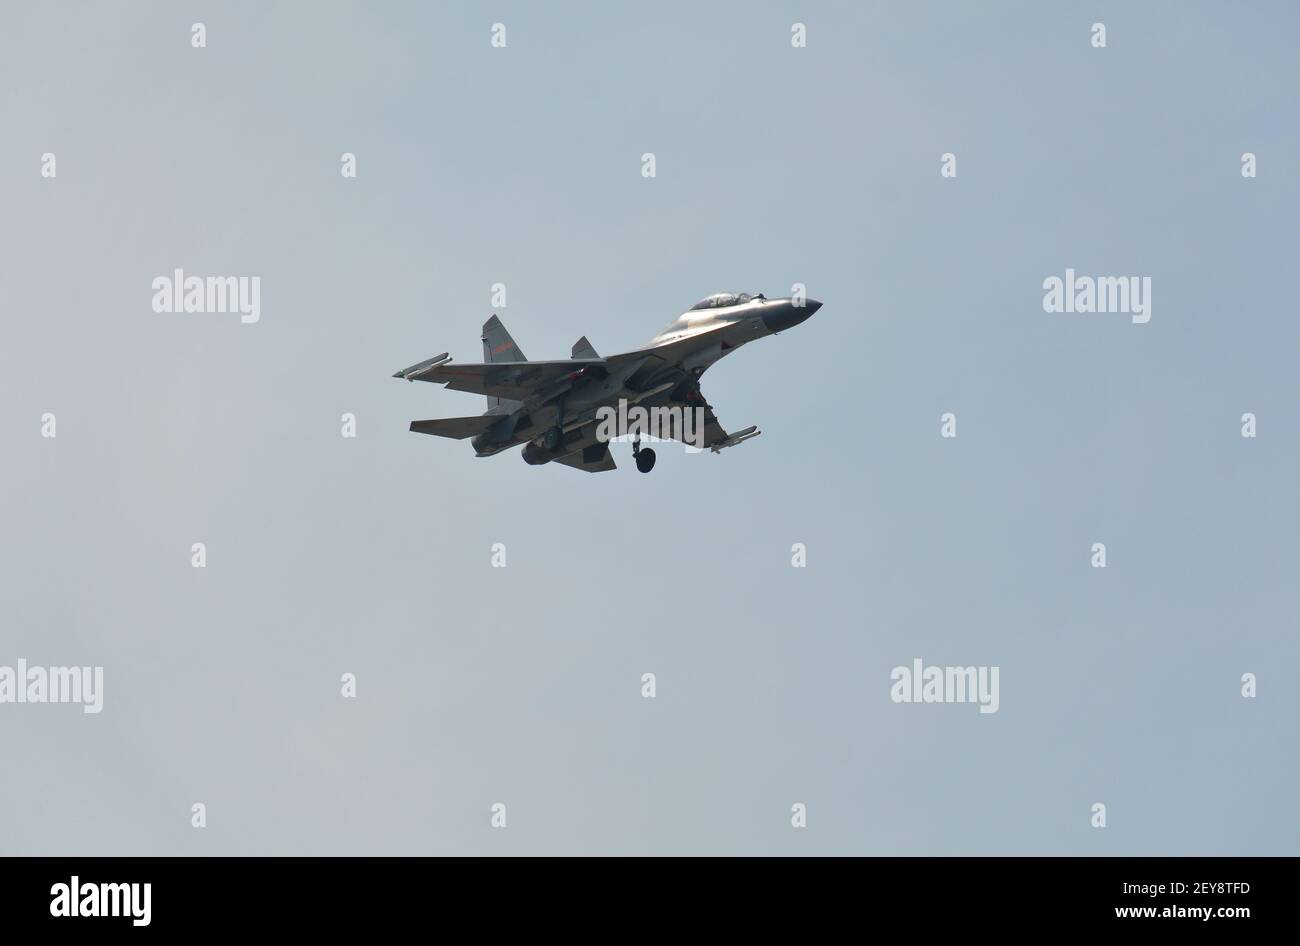 L'avion de chasse chinois Shenyang-J11 à moteur double débarque à la base aérienne de Jiaxing. Les missiles peuvent être vus sous l'aile et le fuselage. Banque D'Images